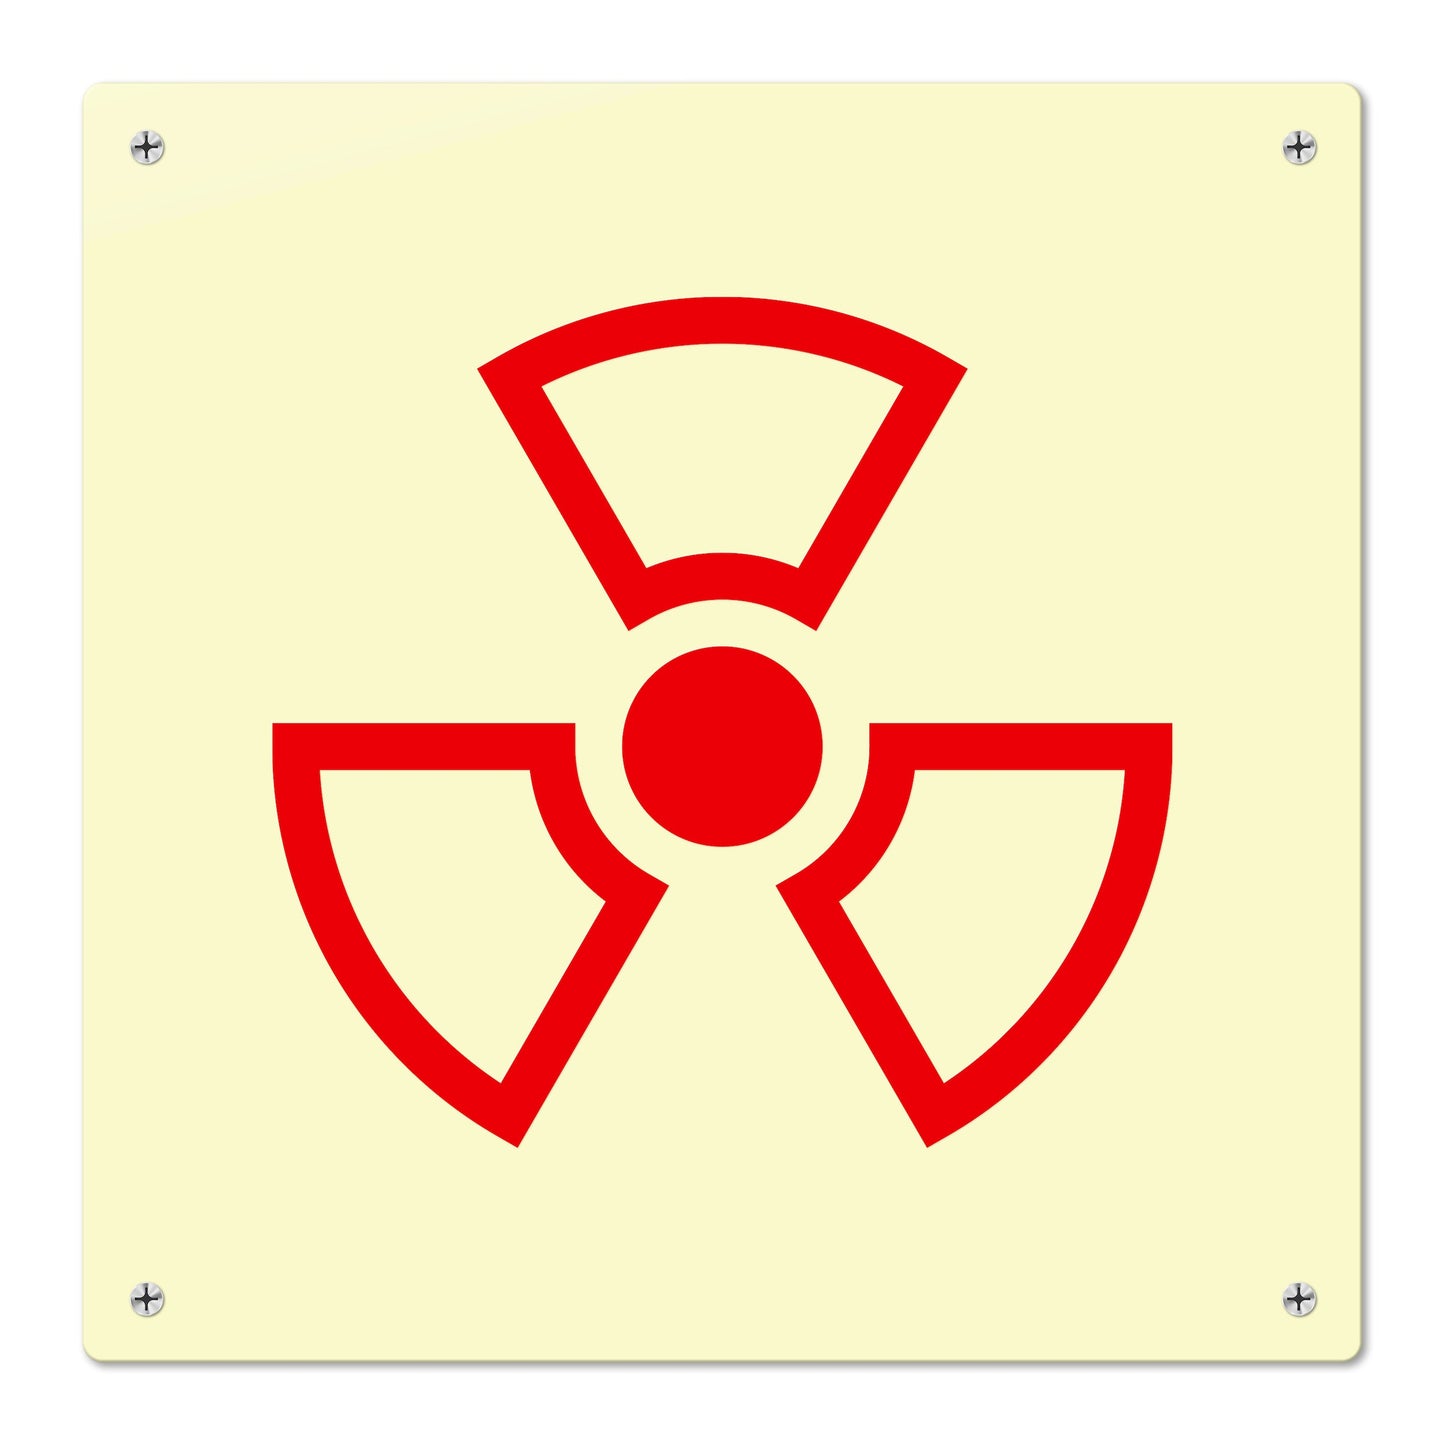 Radioactive (Pictogram)